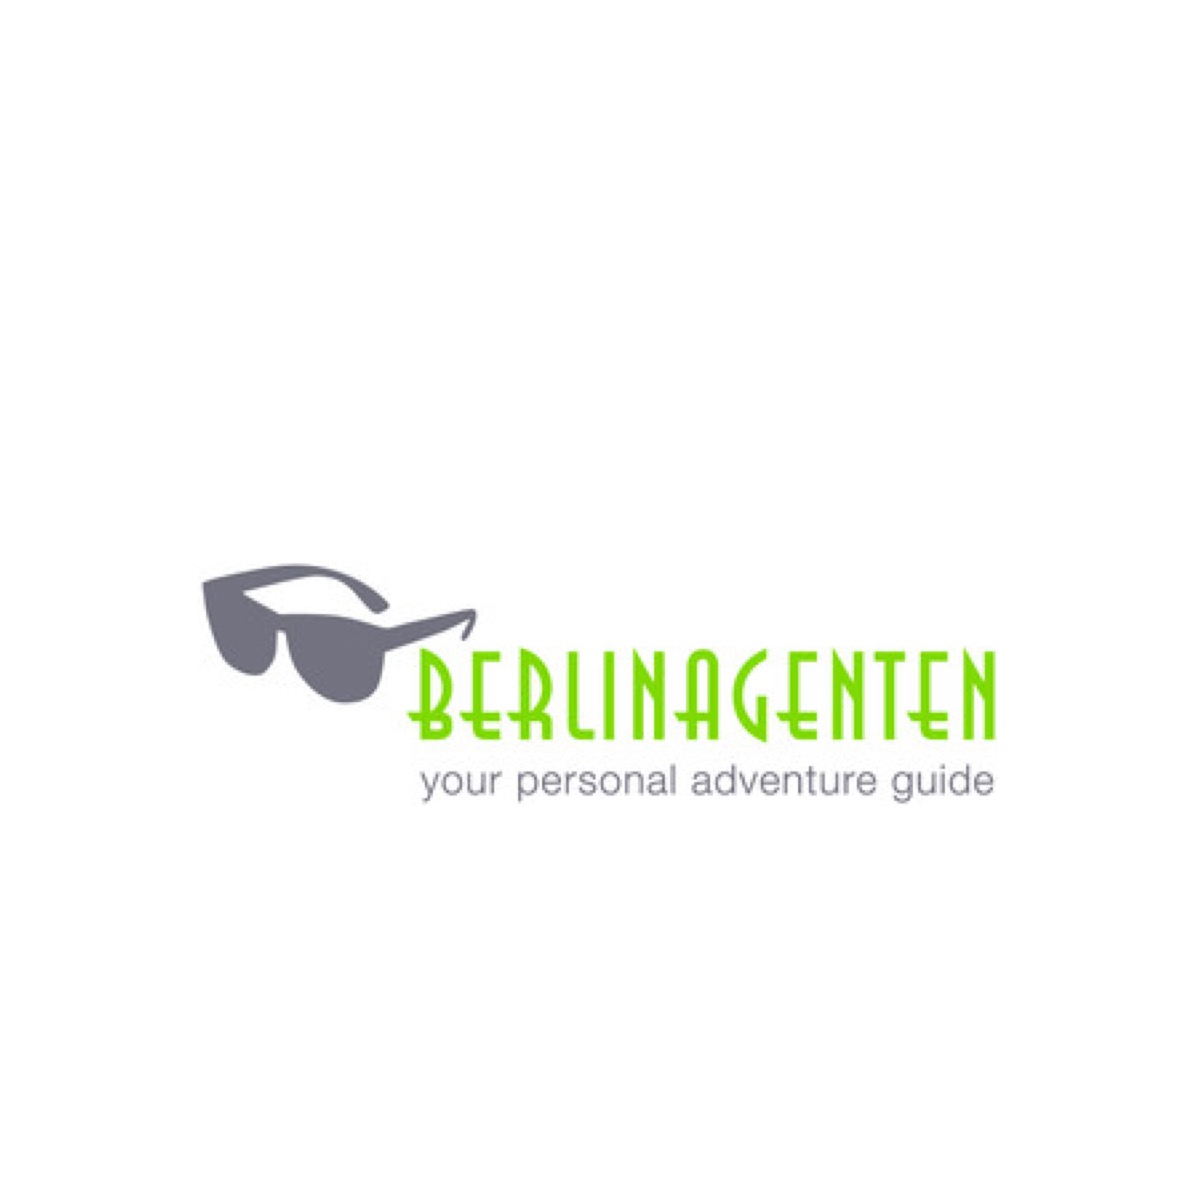 Logo Berlinagenten